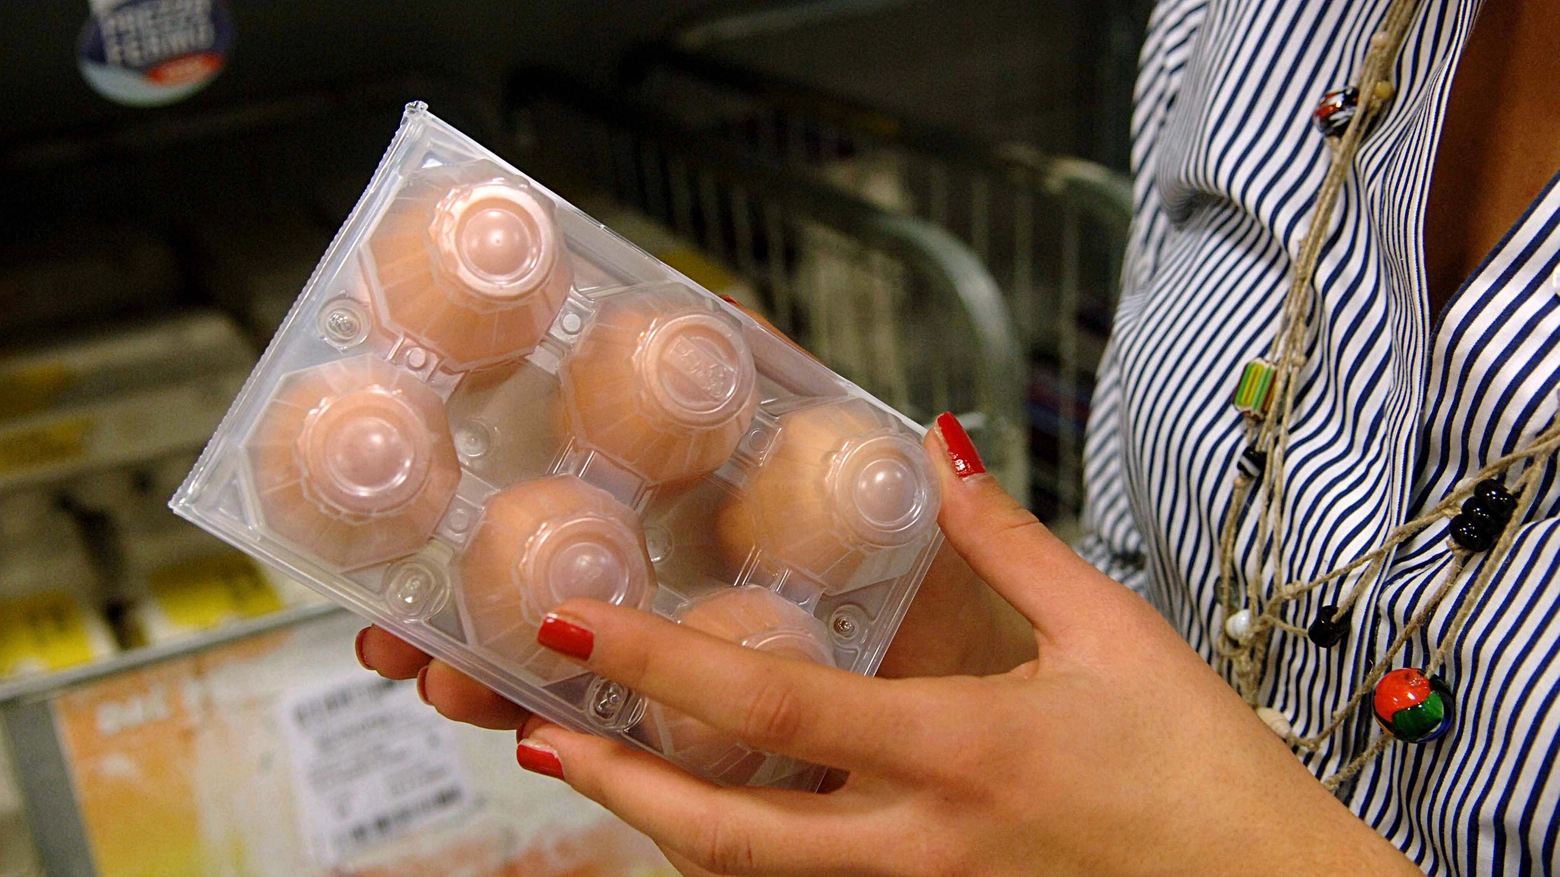 Uova contaminate, bloccata la produzione